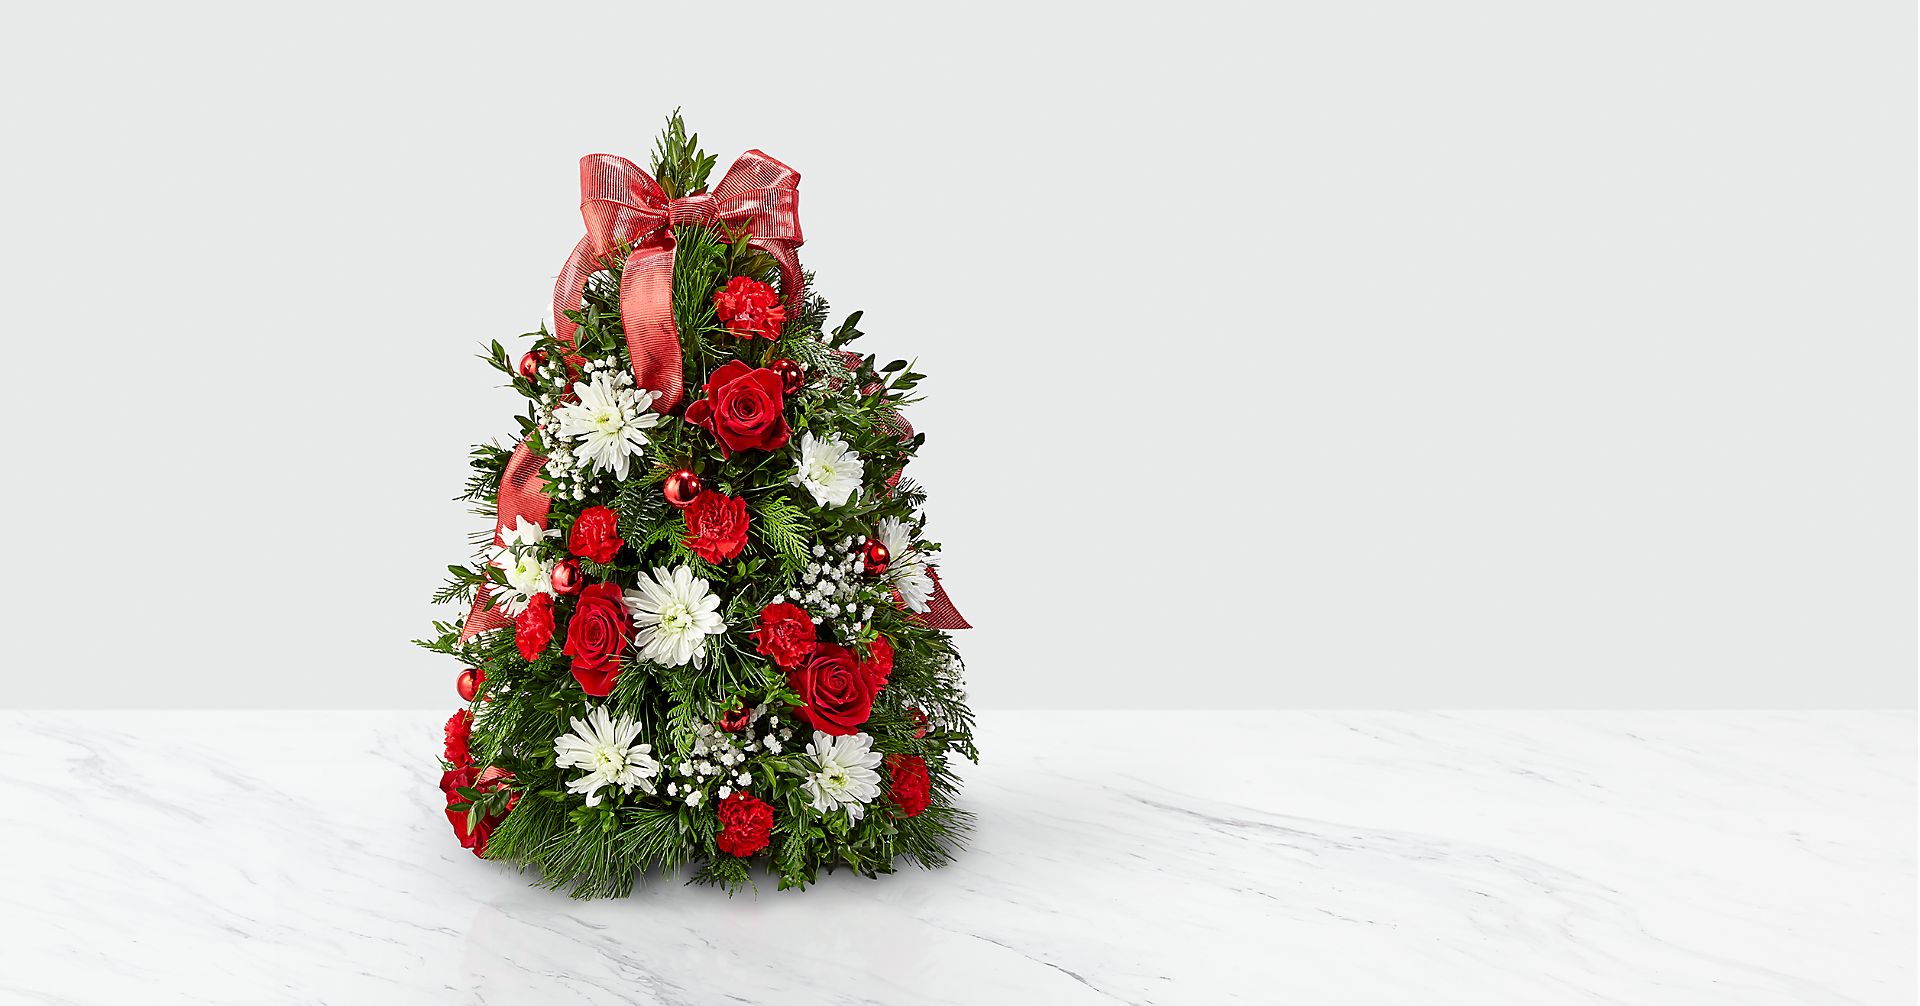 Make it Merry Tree Basket Flower Bouquet